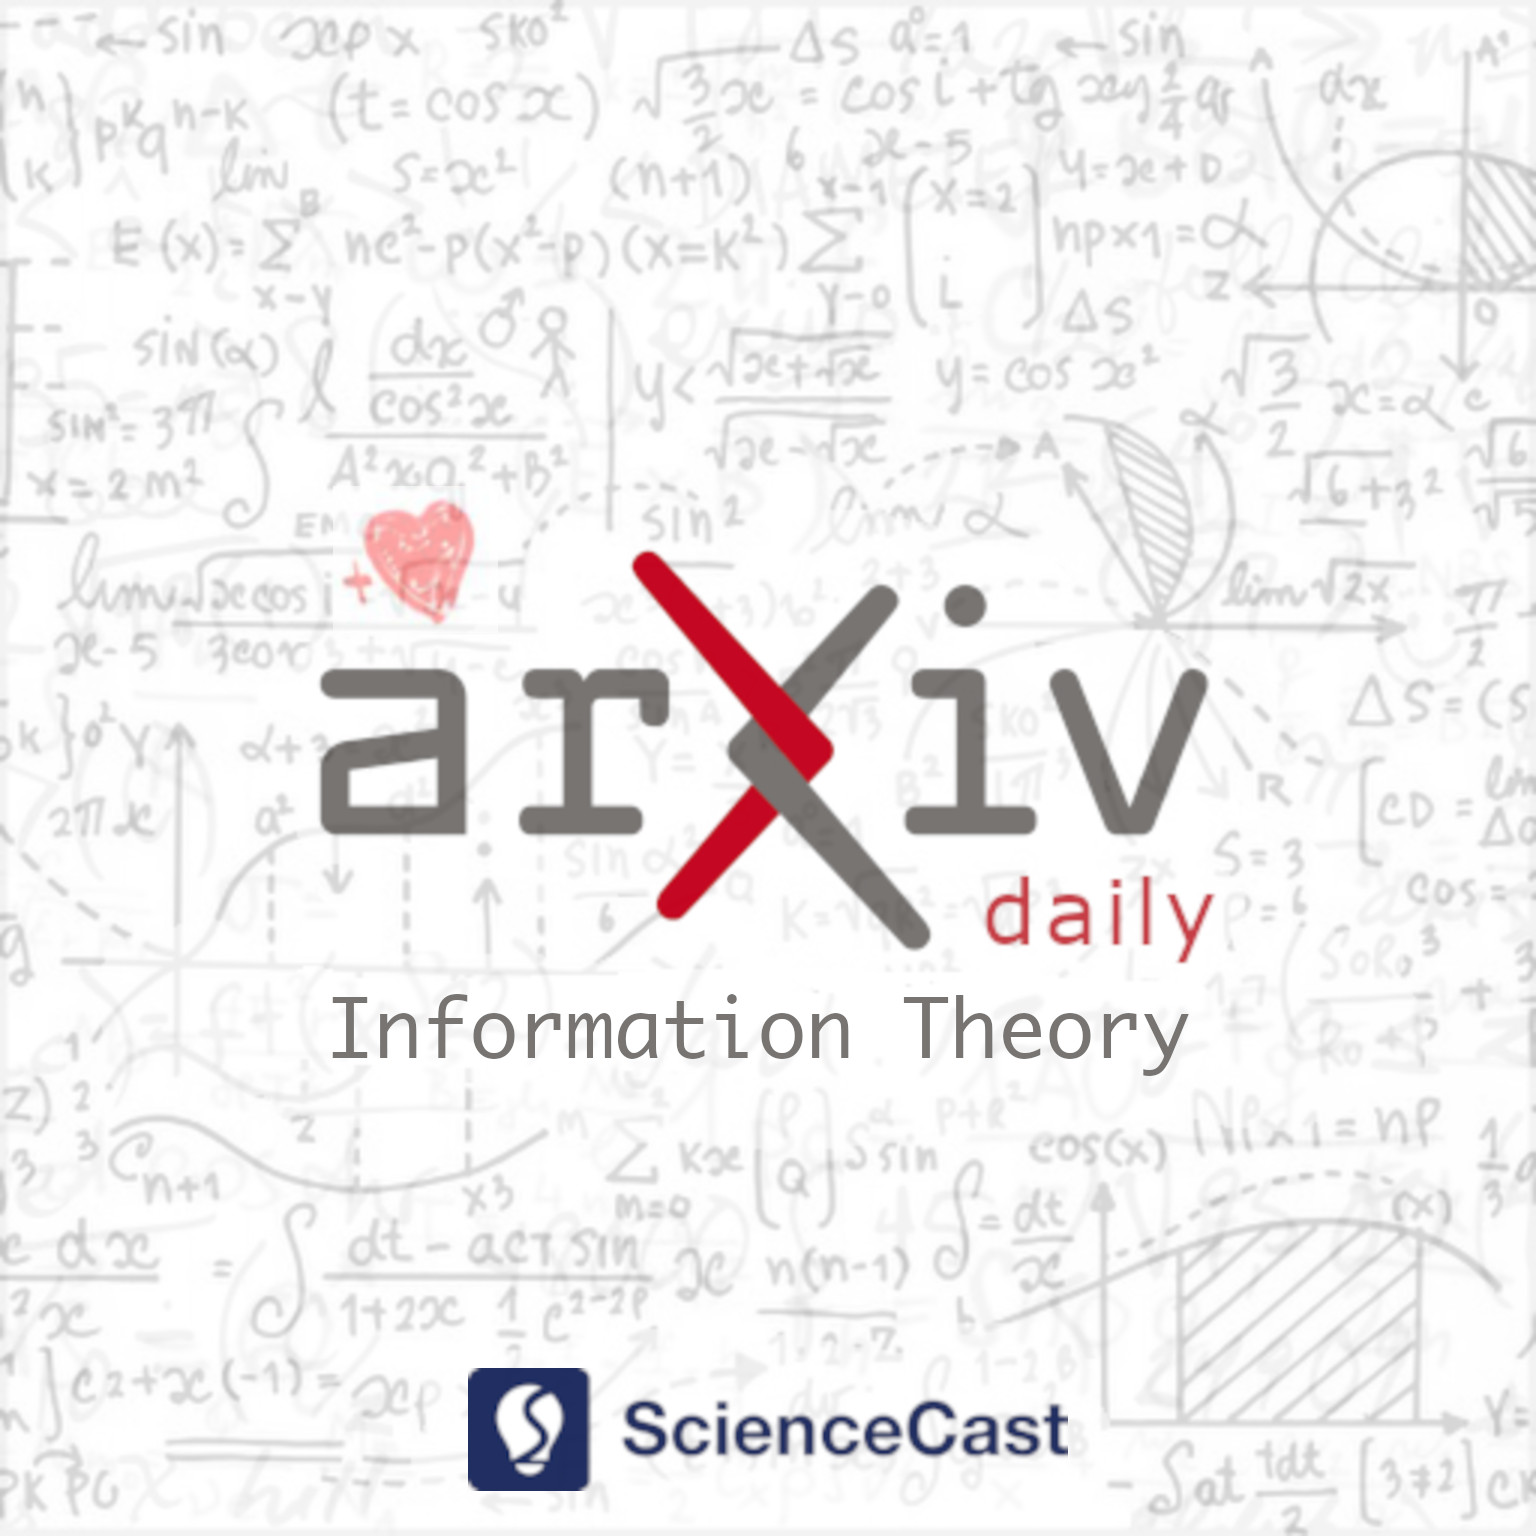 arXiv daily: Information Theory